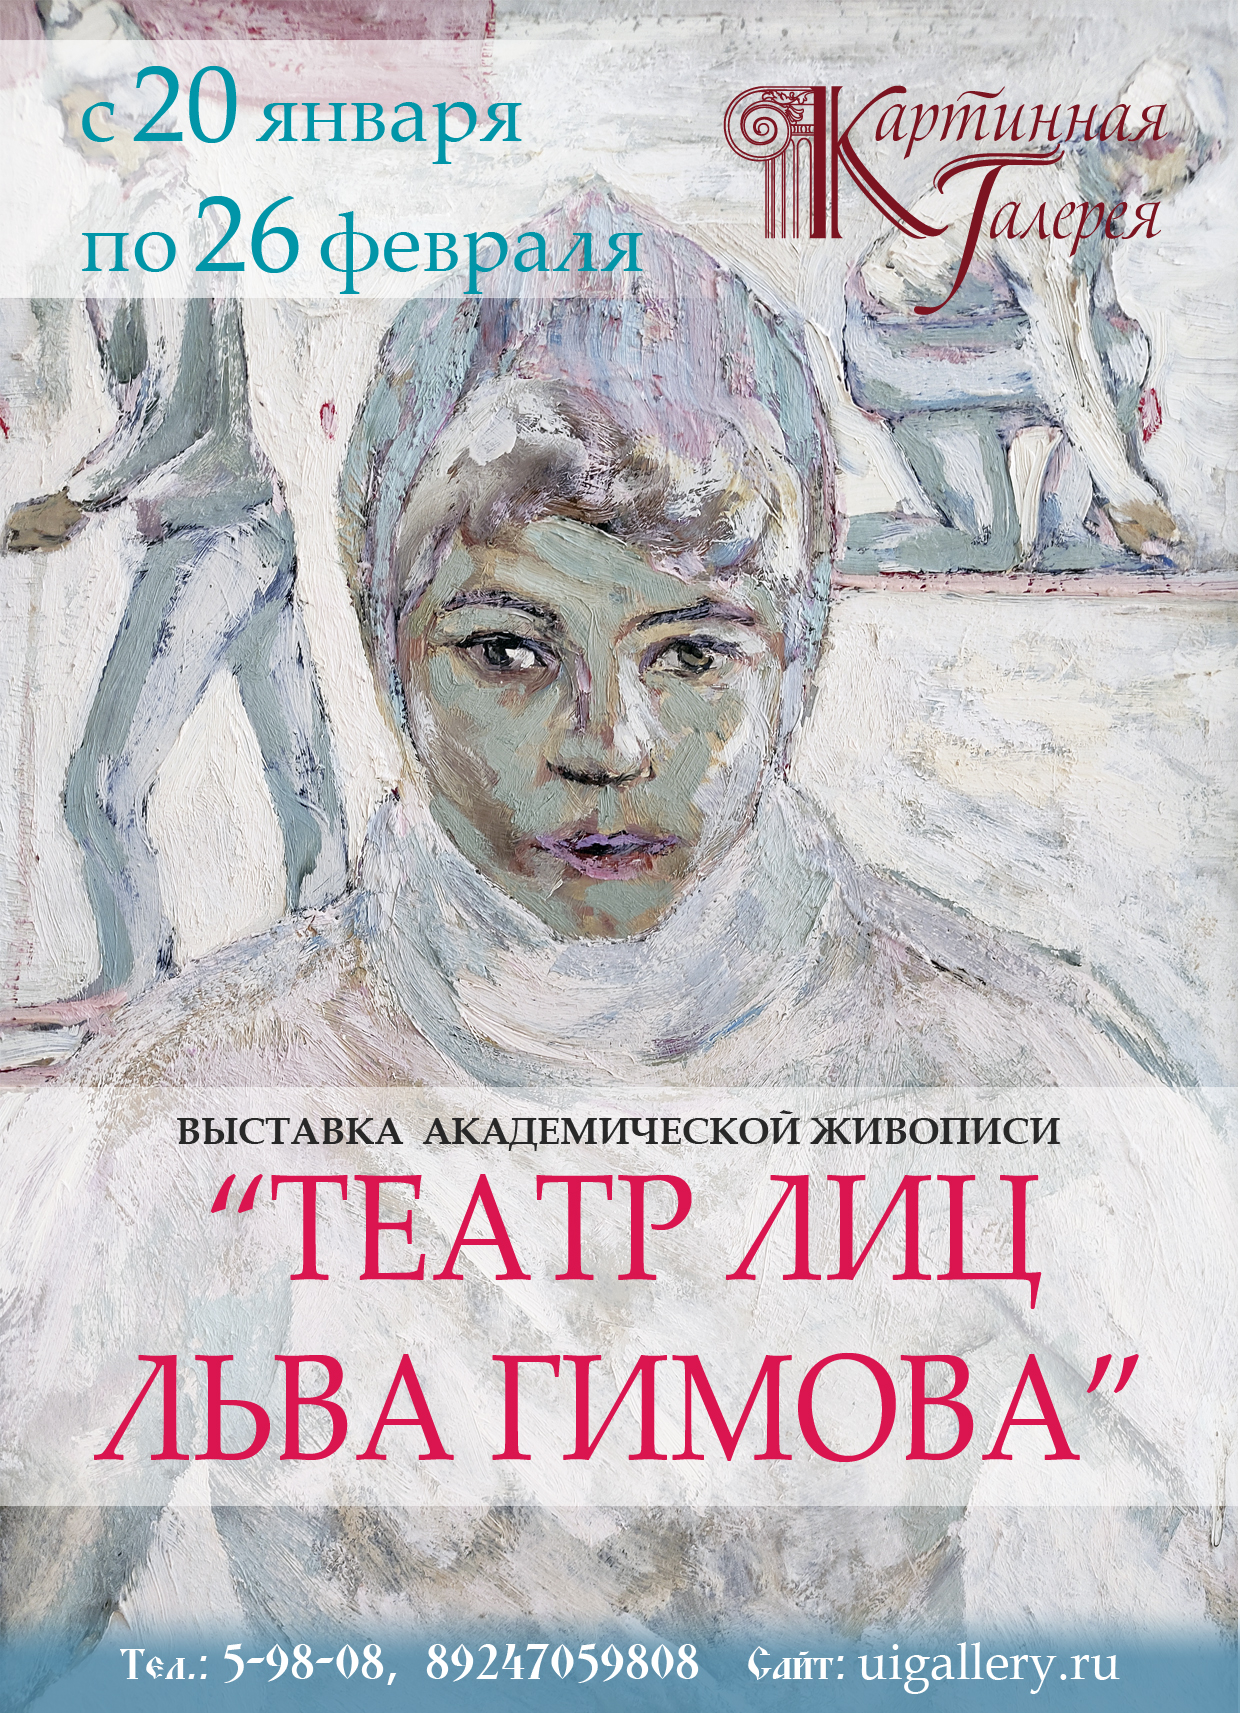 персональная выставка иркутского художника "Театр лиц Льва Гимова"